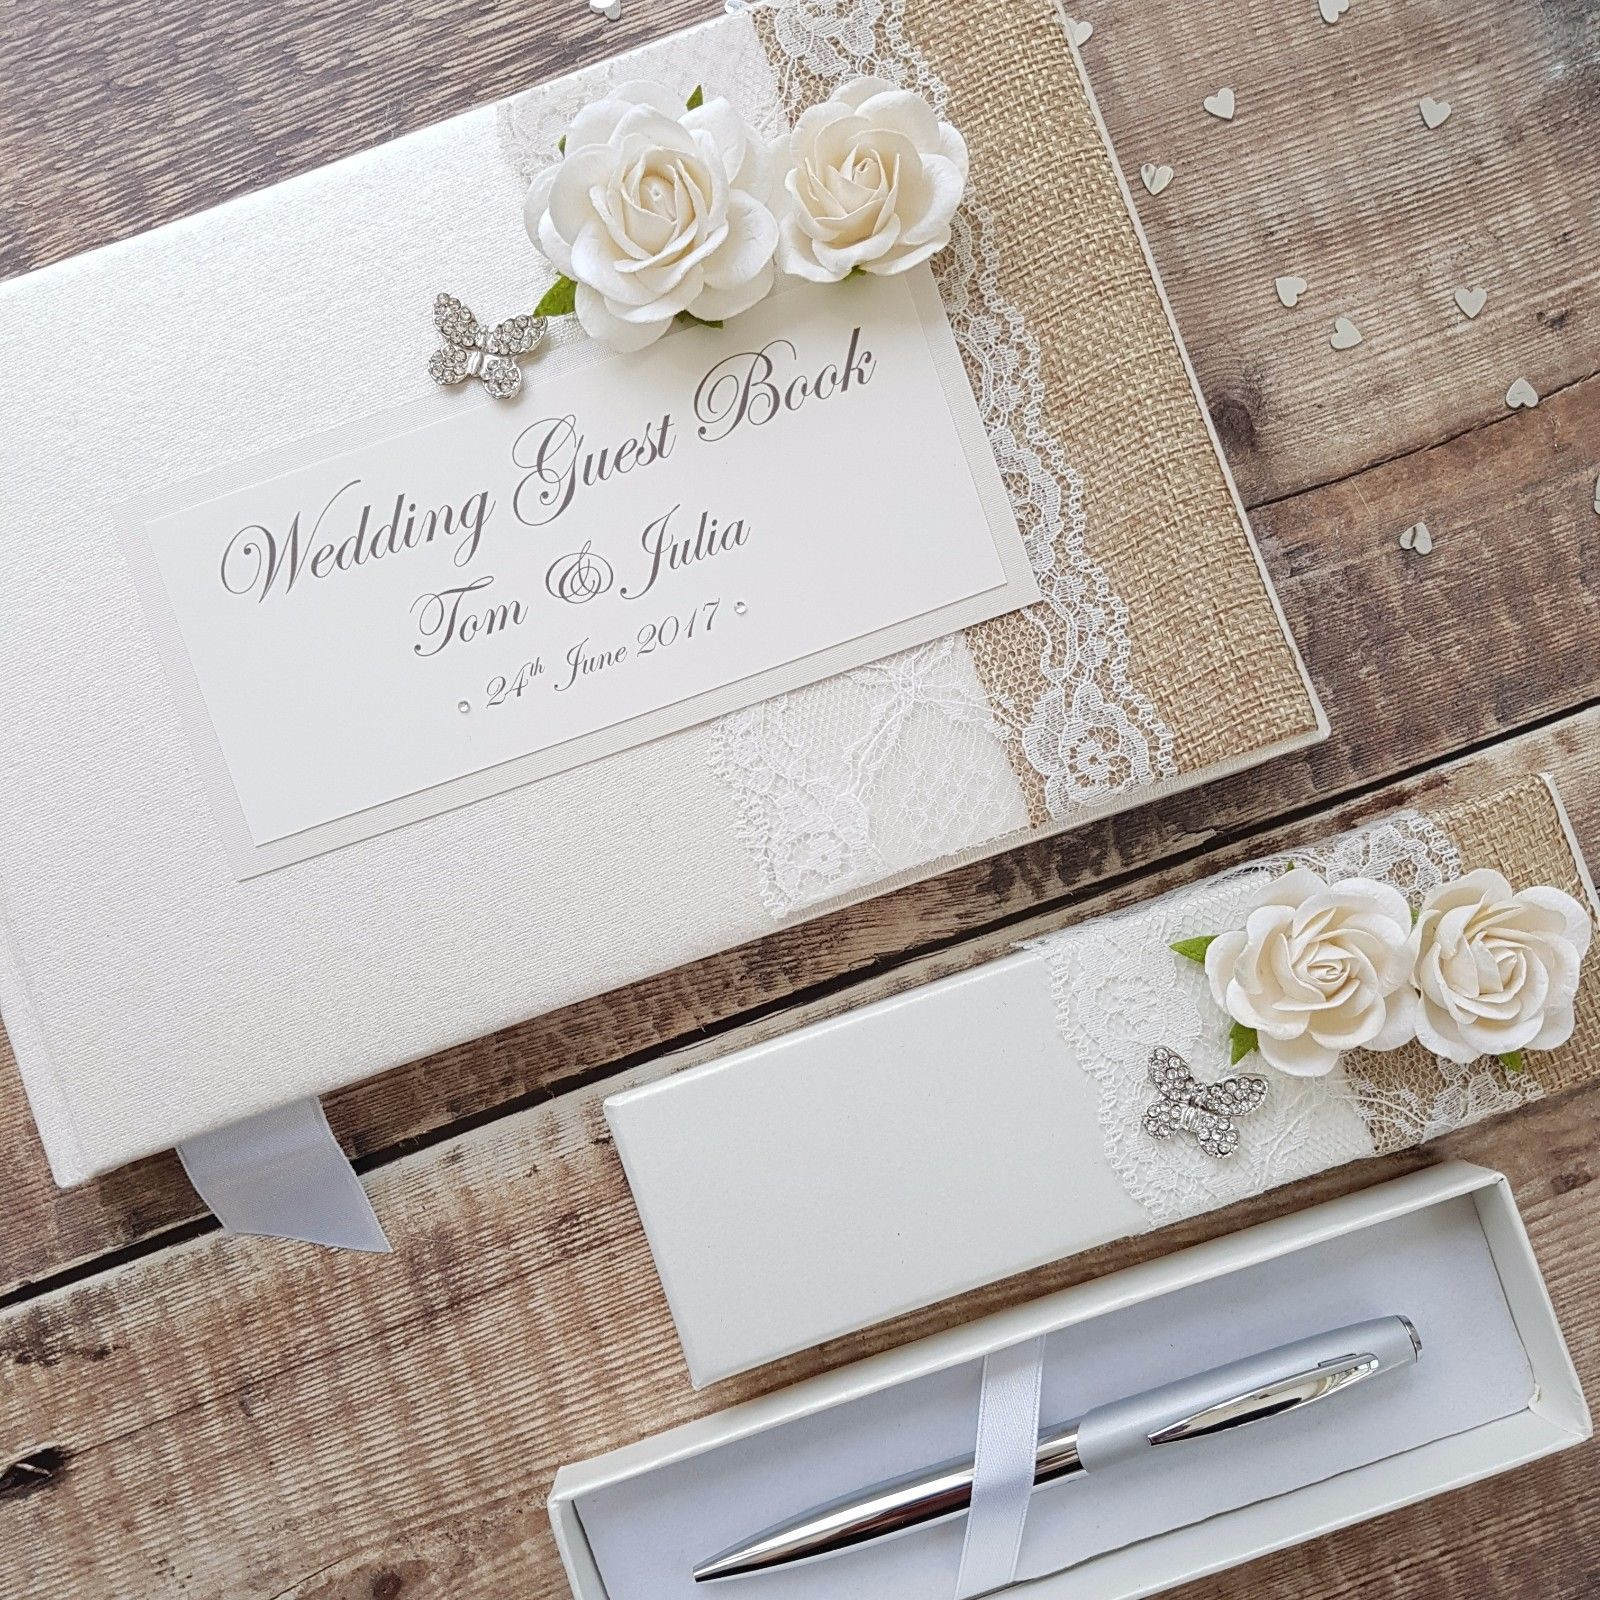 Wedding Guest Book Sets Cheap
 Wedding Guest Book & Pen Set – Handmade Hessian Lace